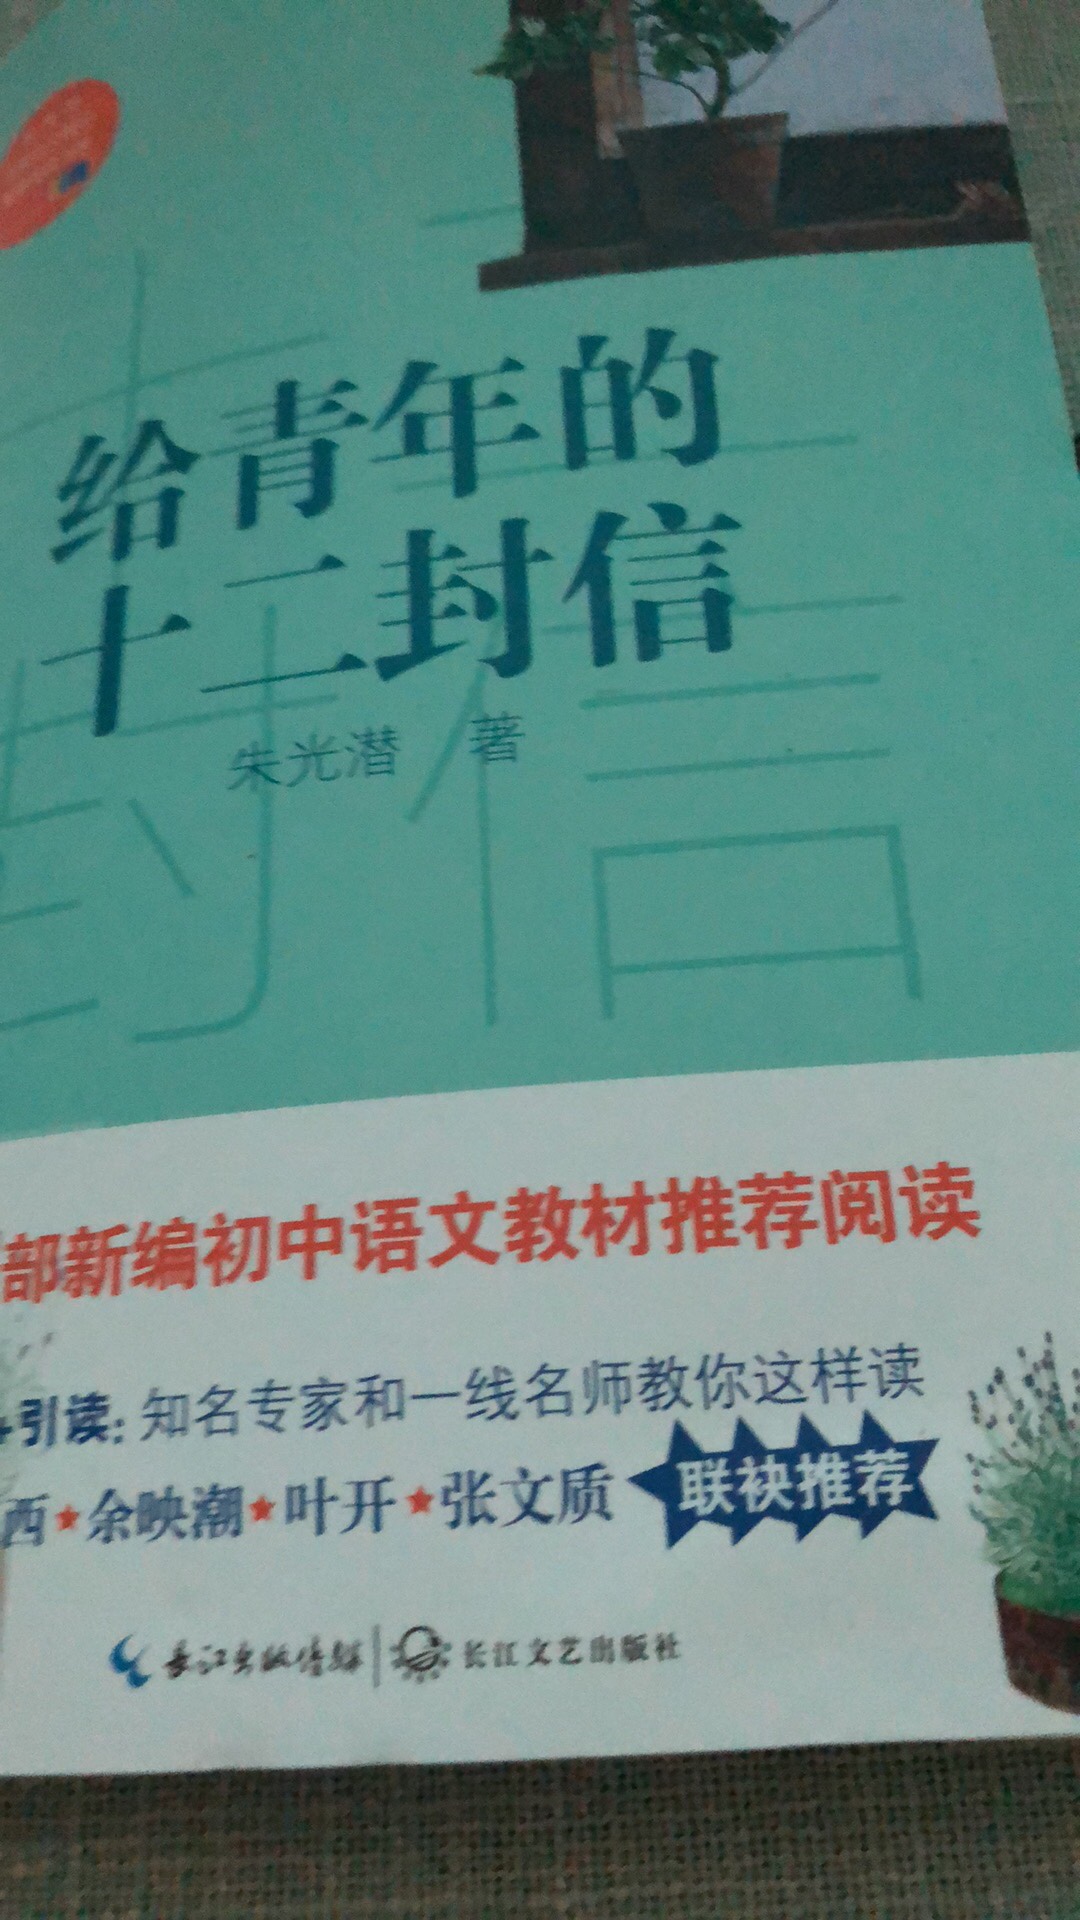 很有意思的一本书，看完对汉字提高了兴趣